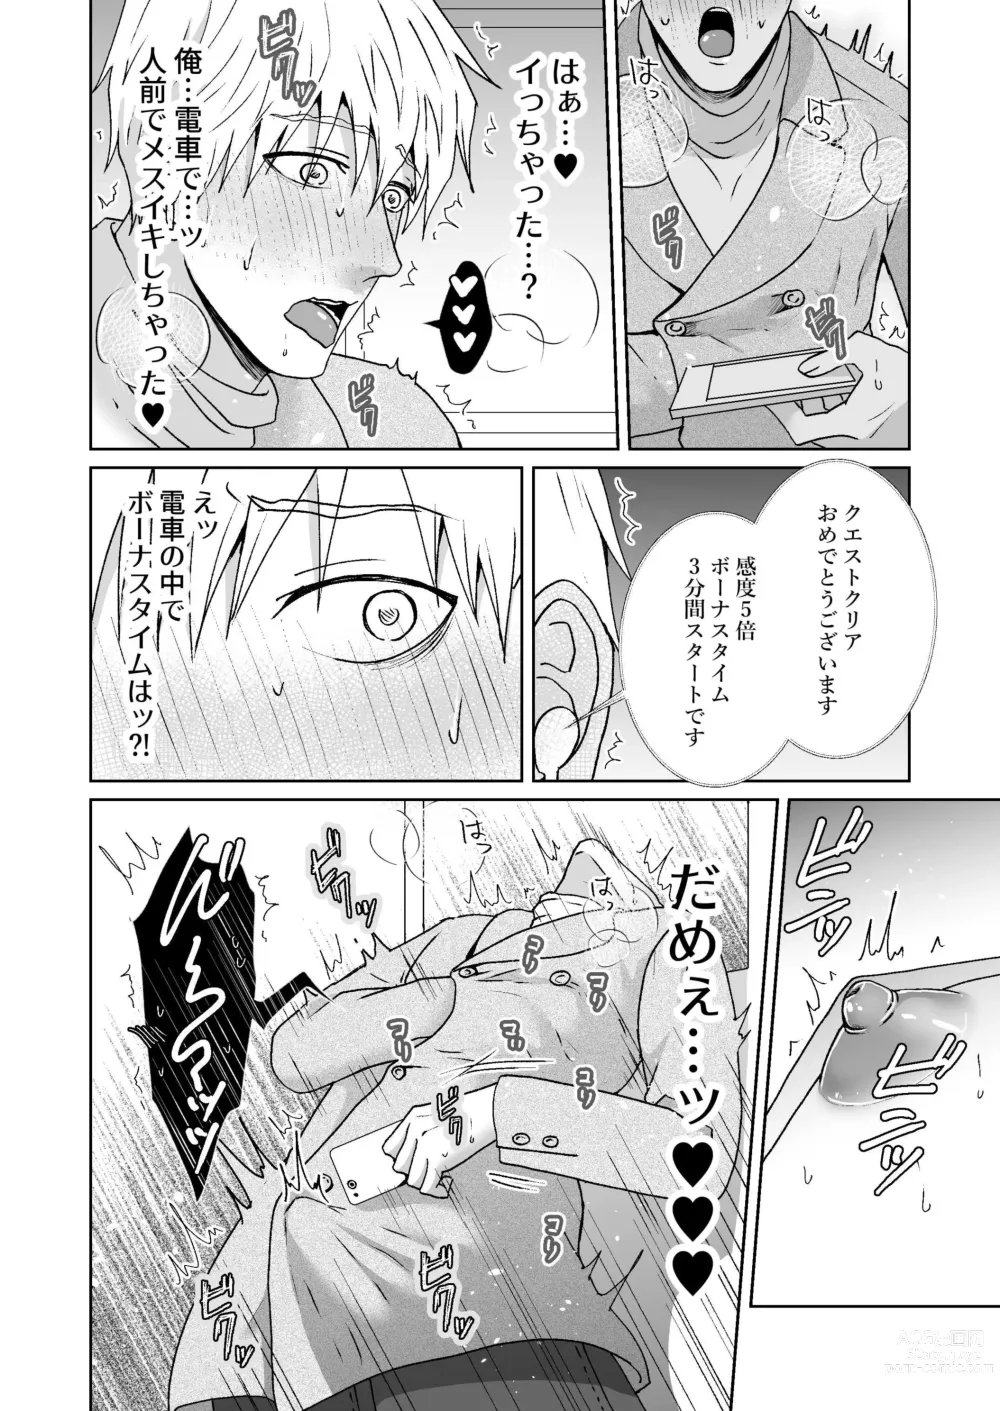 Page 21 of doujinshi Chikubi Ikusei Game